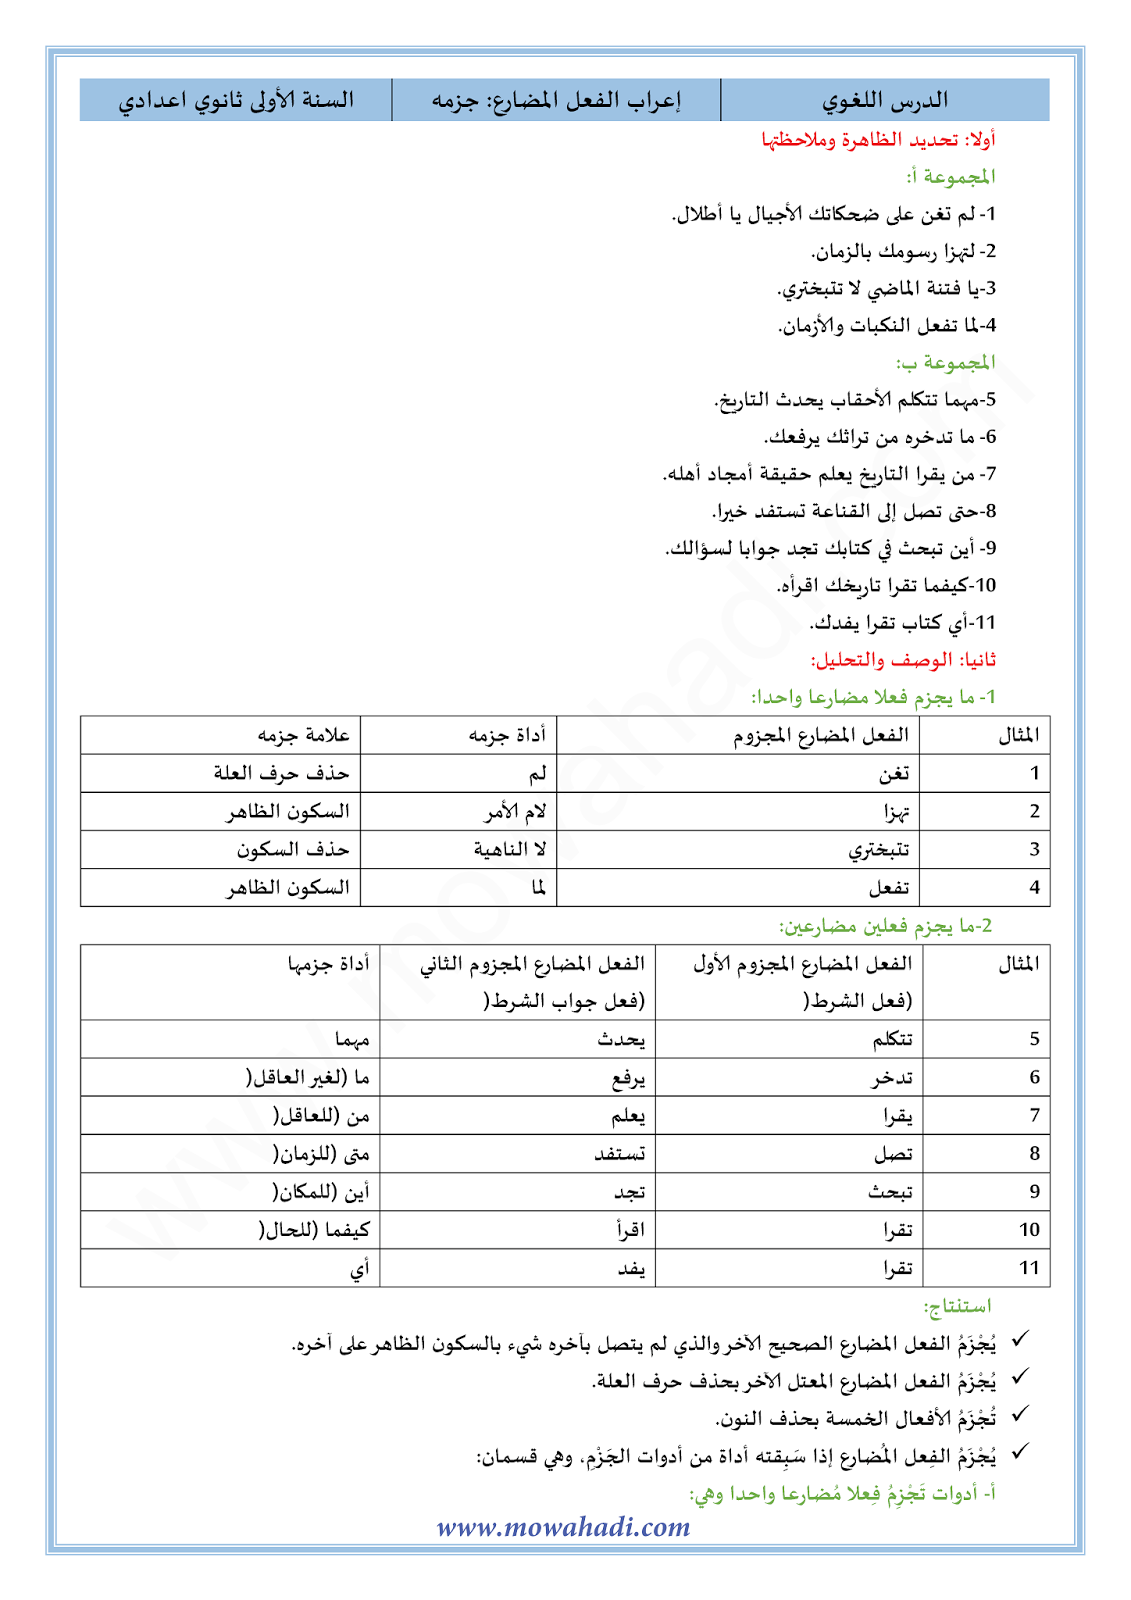 الدرس اللغوي اعراب الفعل المضارع : جزمه للسنة الأولى اعدادي في مادة اللغة العربية 11-cours-dars-loghawi1_001